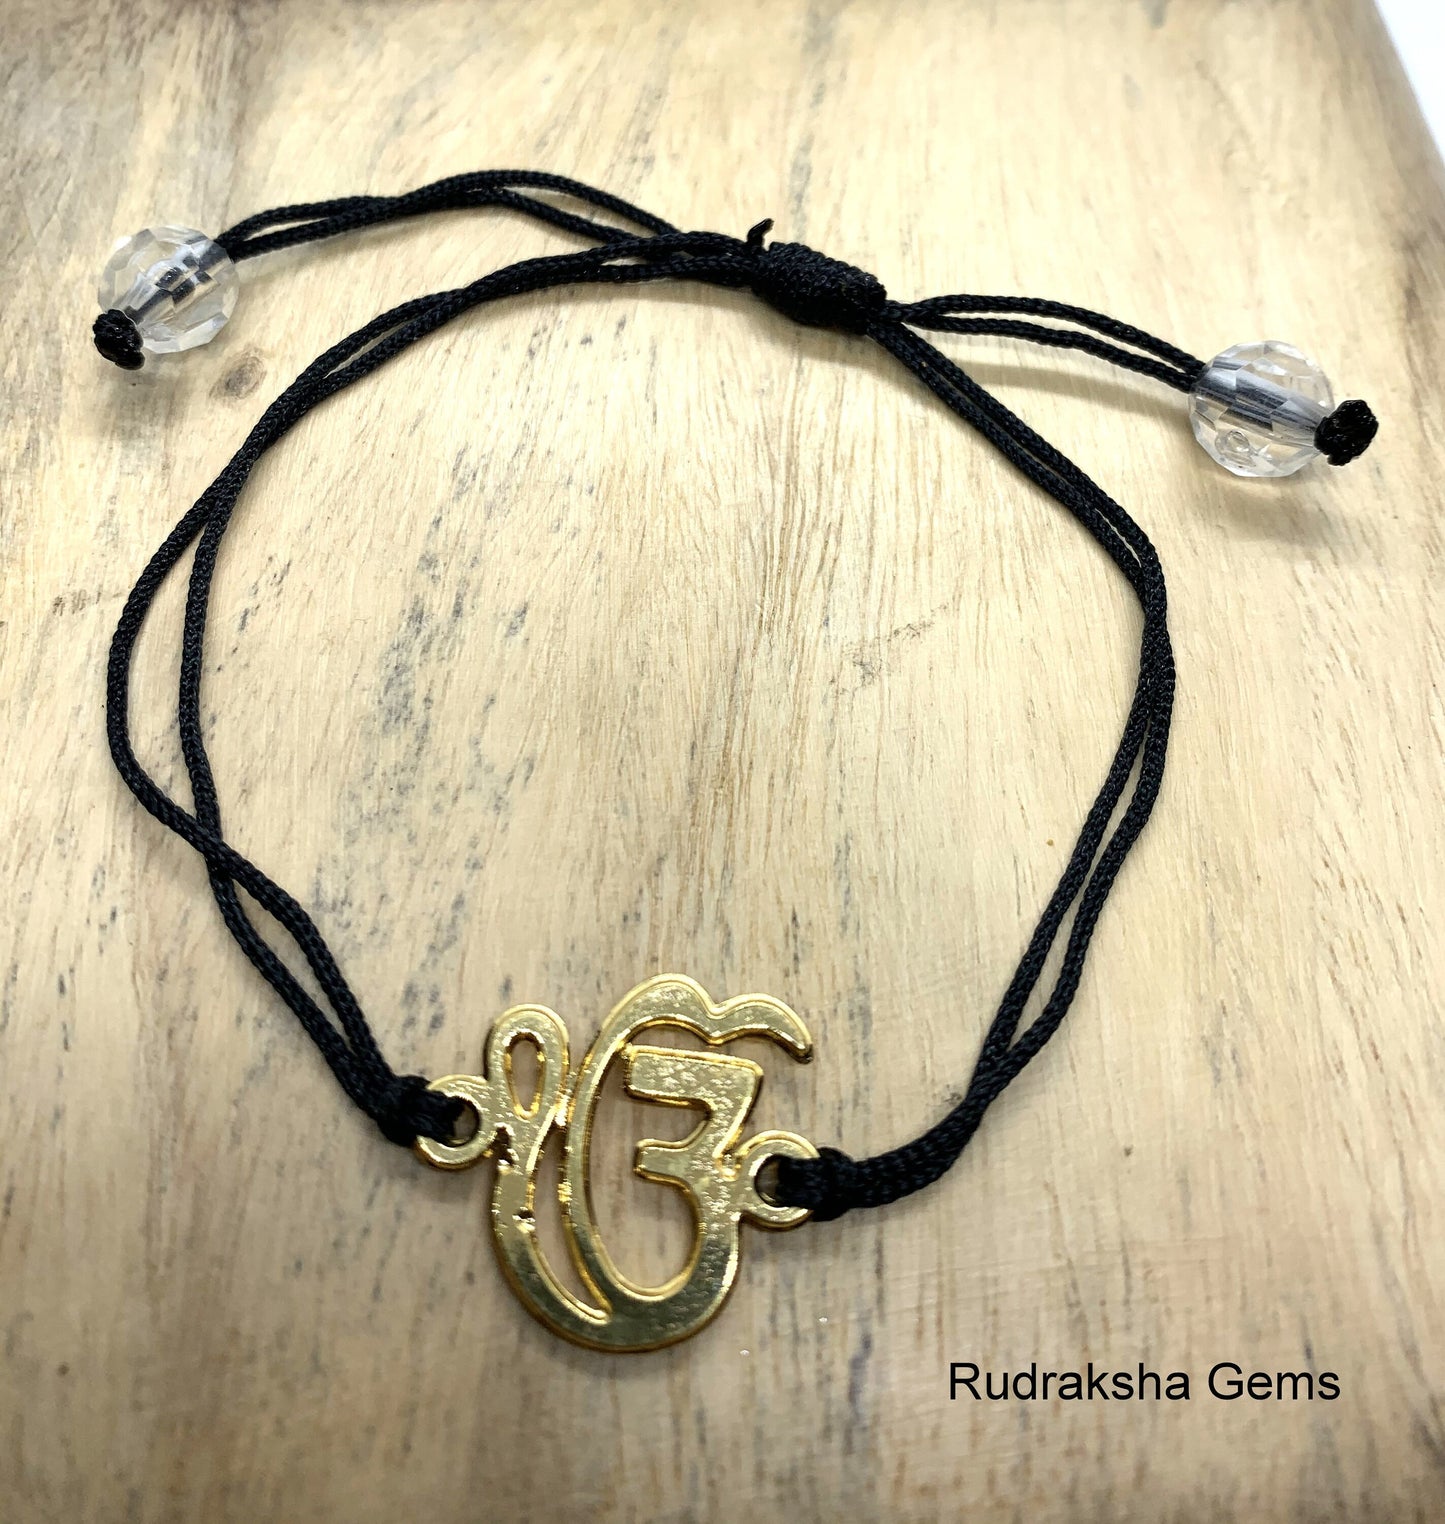 Ek Omkar bracelet, Sikh bracelet, Wahe Guru Bracelet, Meditation, Yoga inspired Jewellery, Adjustable bracelet, IK OMKAR bracelet, Gift